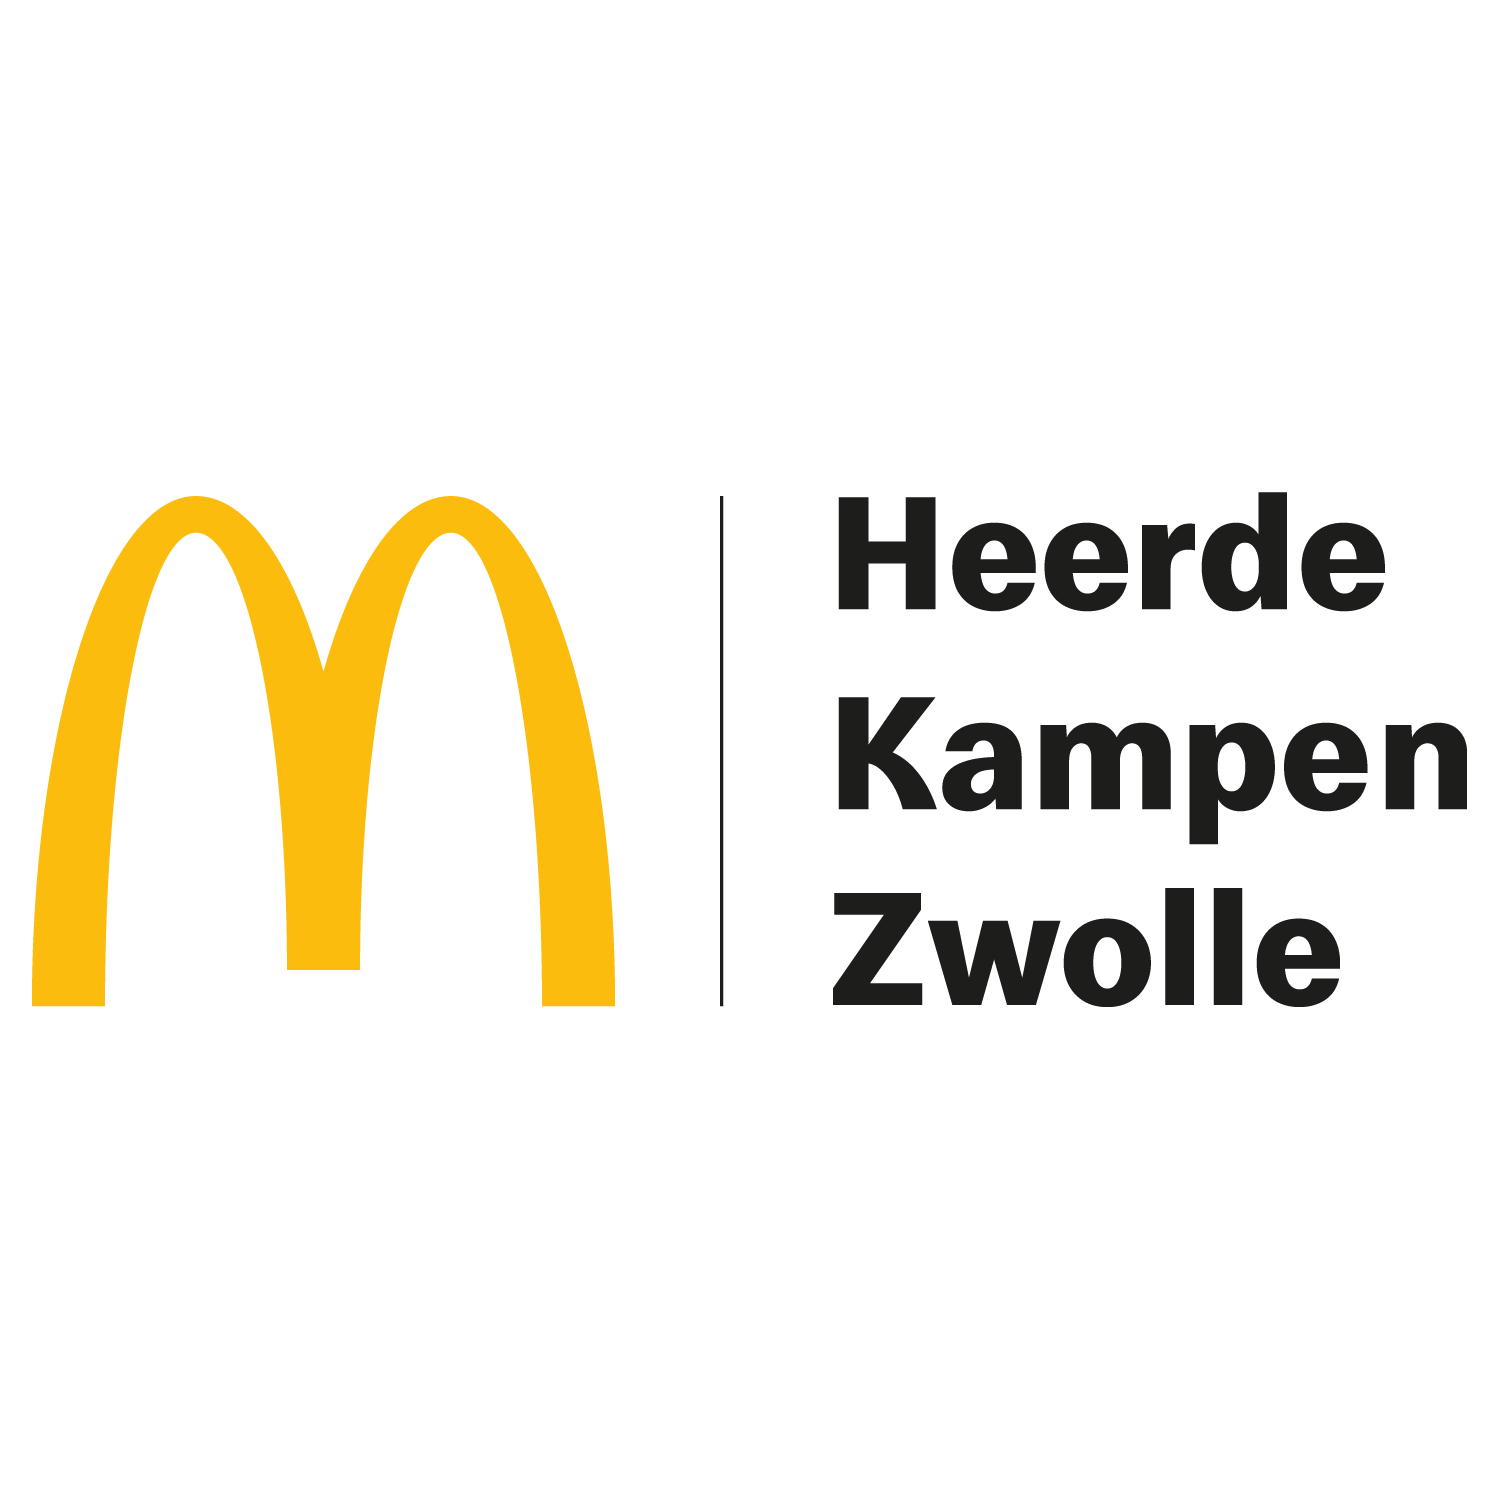 McDonald's Heerde, Kampen & Zwolle